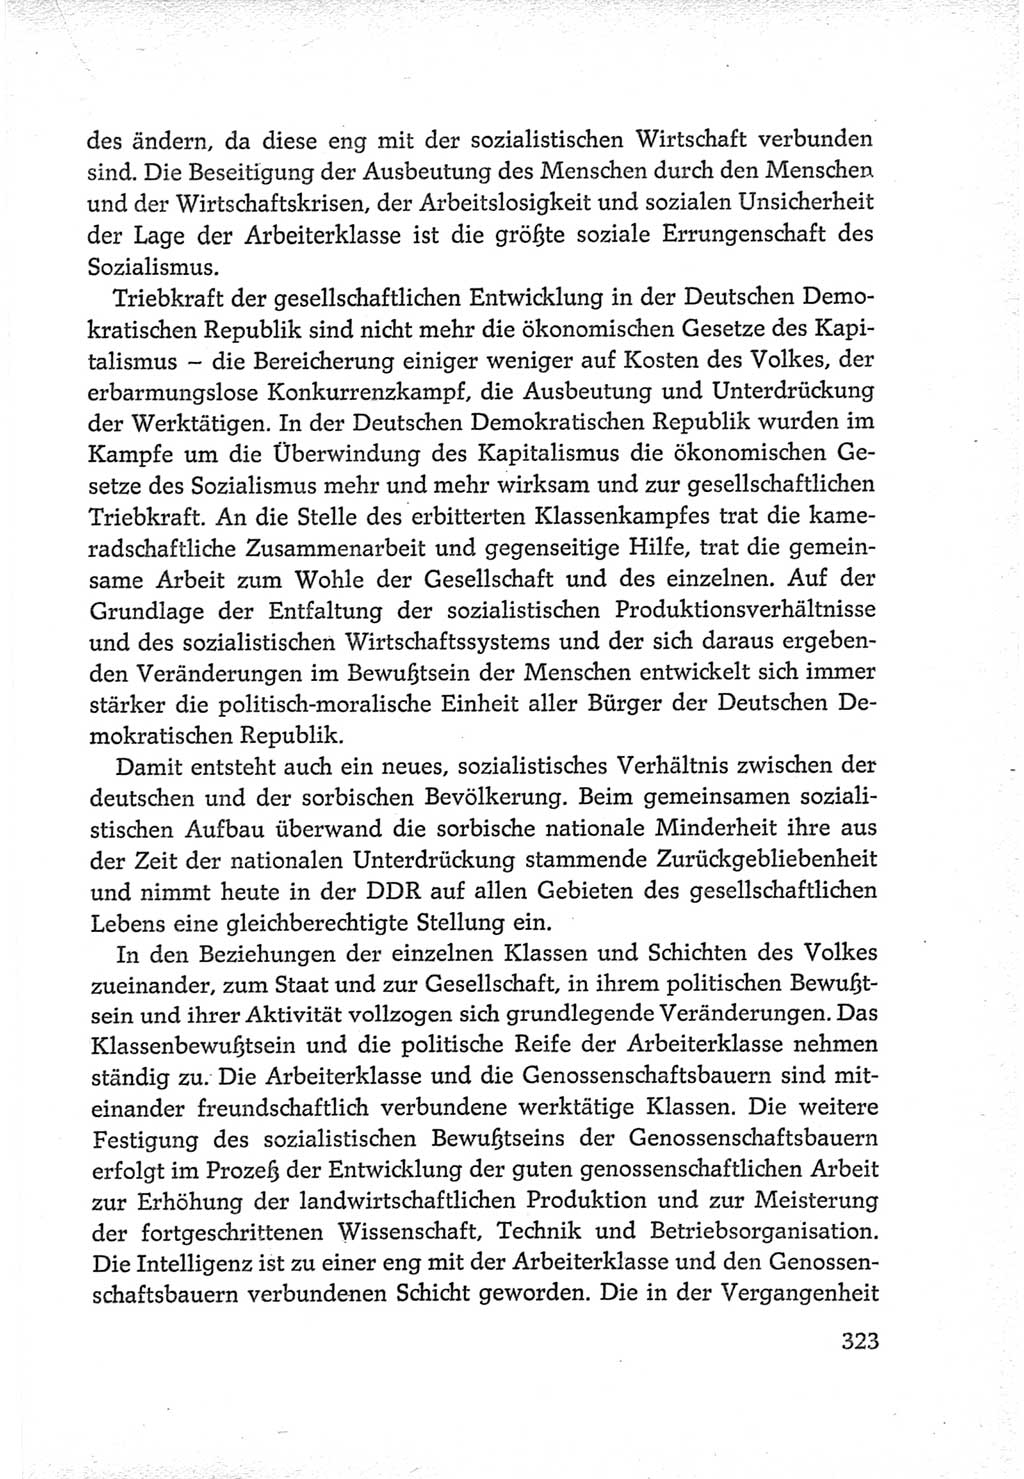 Protokoll der Verhandlungen des Ⅵ. Parteitages der Sozialistischen Einheitspartei Deutschlands (SED) [Deutsche Demokratische Republik (DDR)] 1963, Band Ⅳ, Seite 323 (Prot. Verh. Ⅵ. PT SED DDR 1963, Bd. Ⅳ, S. 323)